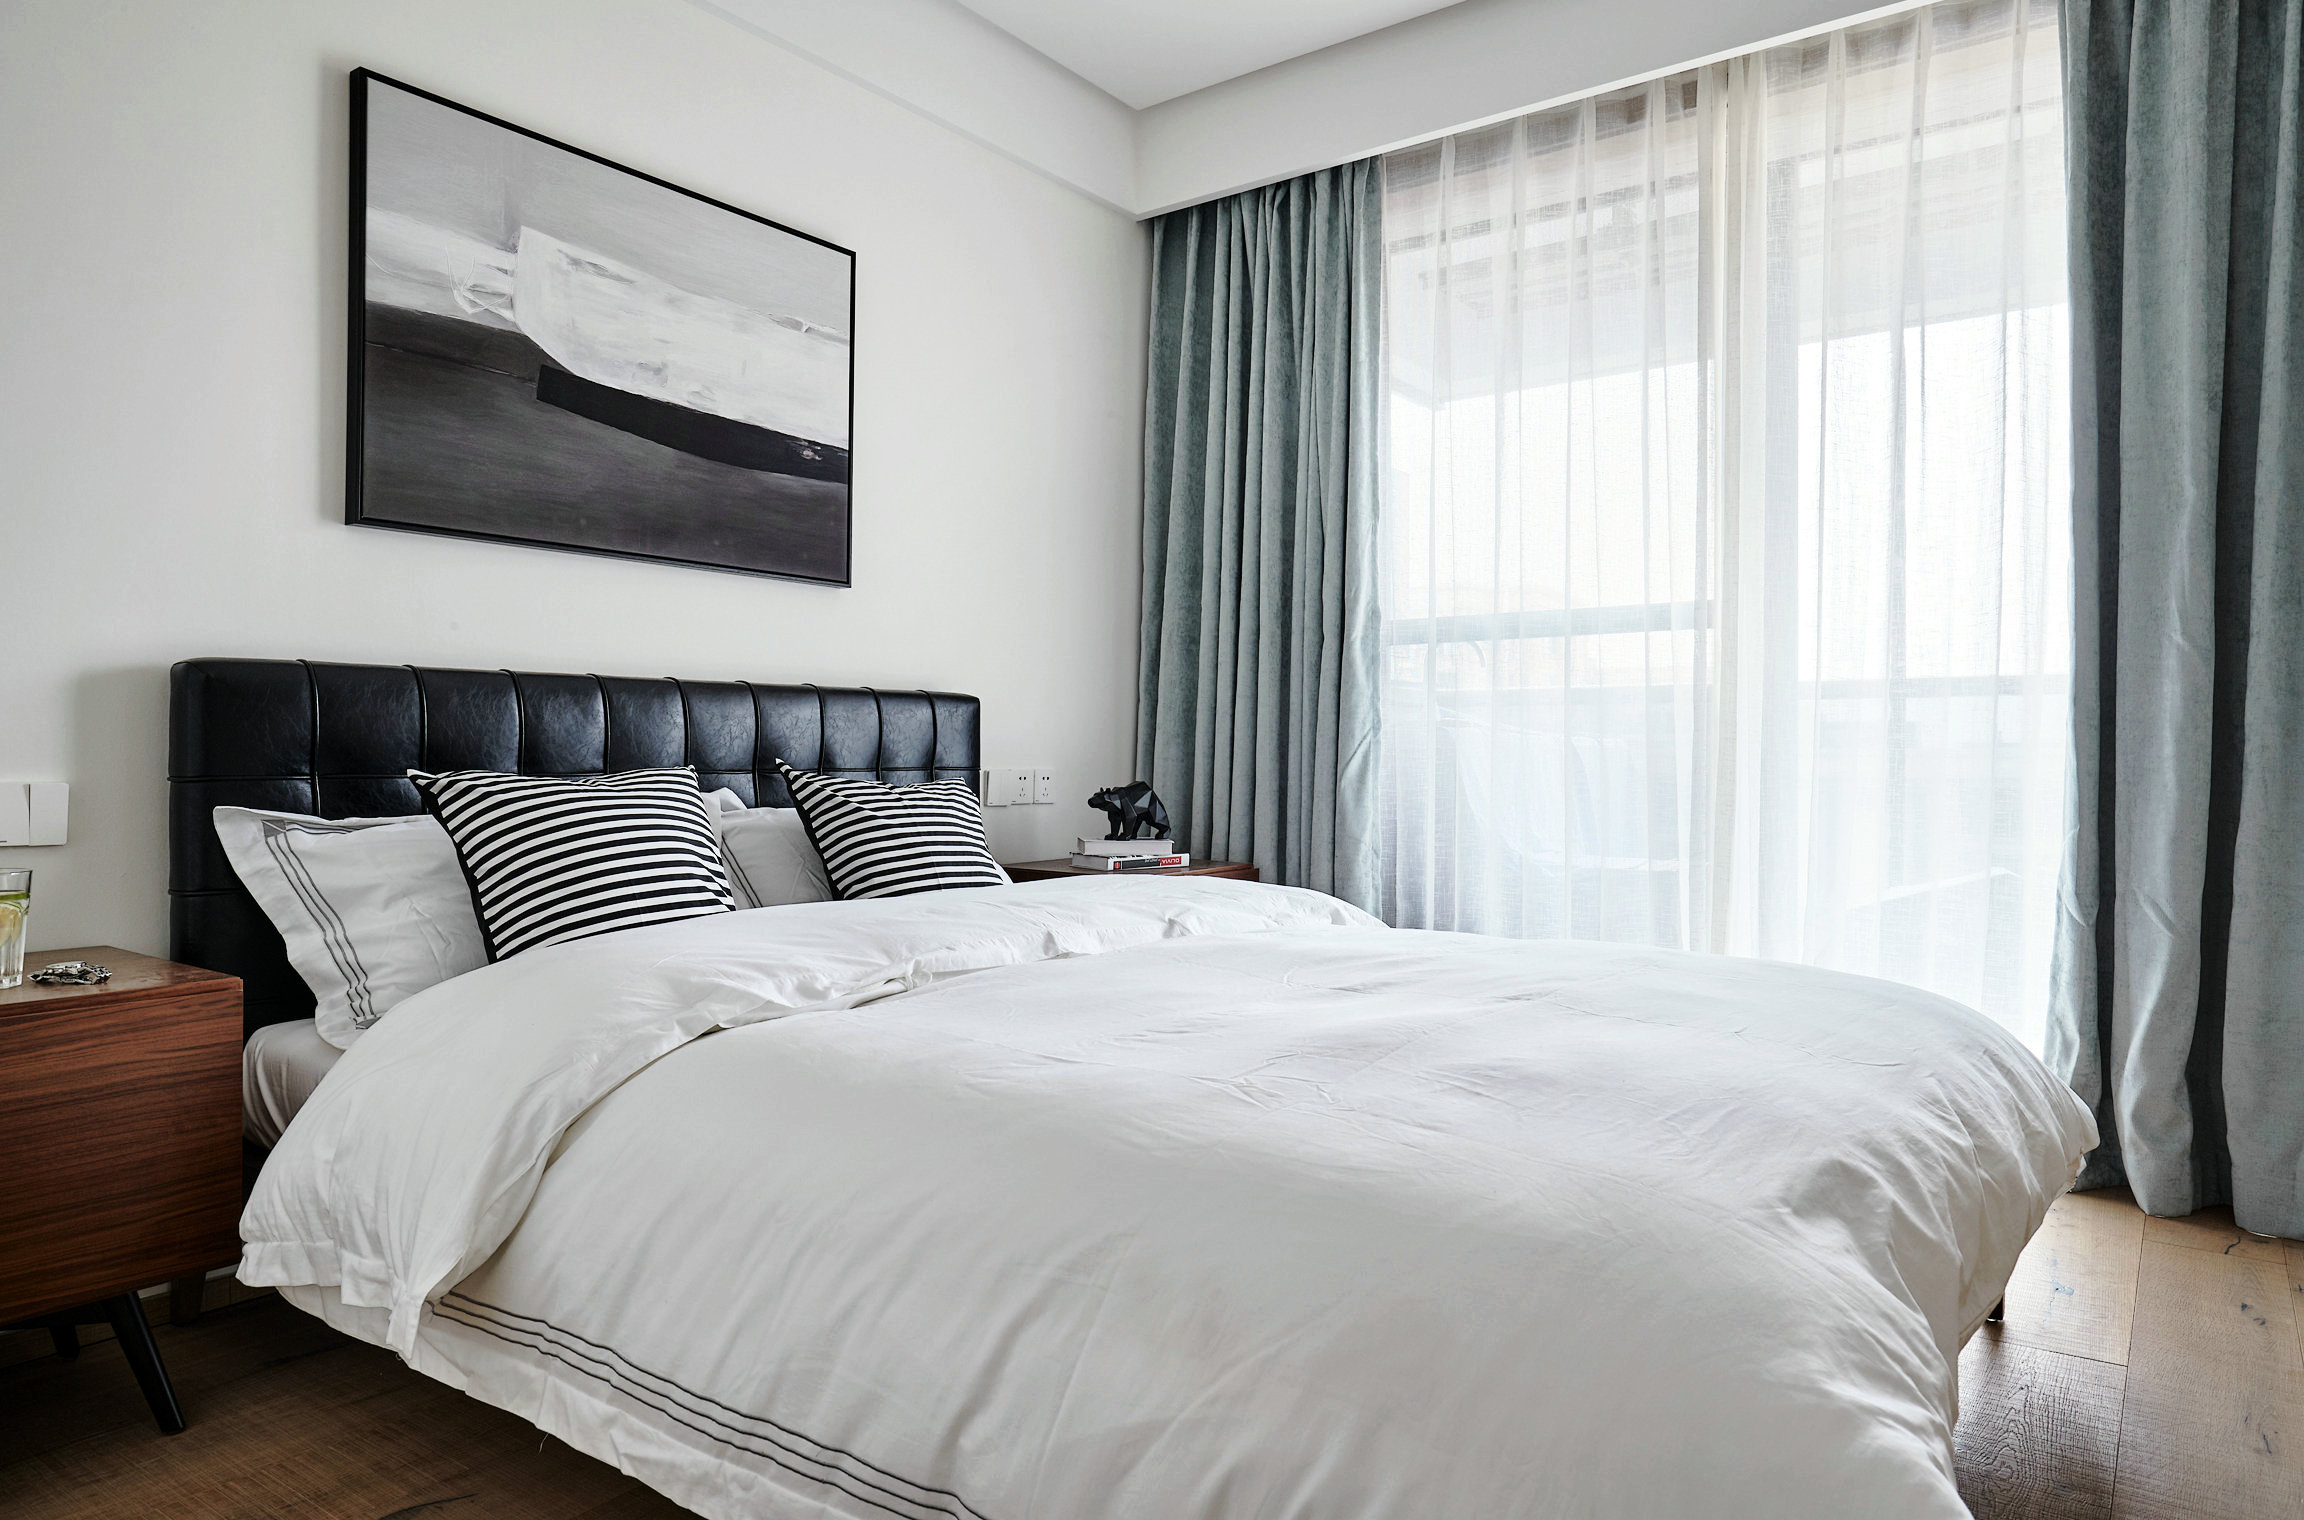 侧卧沿用白色主题，背景墙和床品都选用白色，装饰画与床头颜色相辅相成。